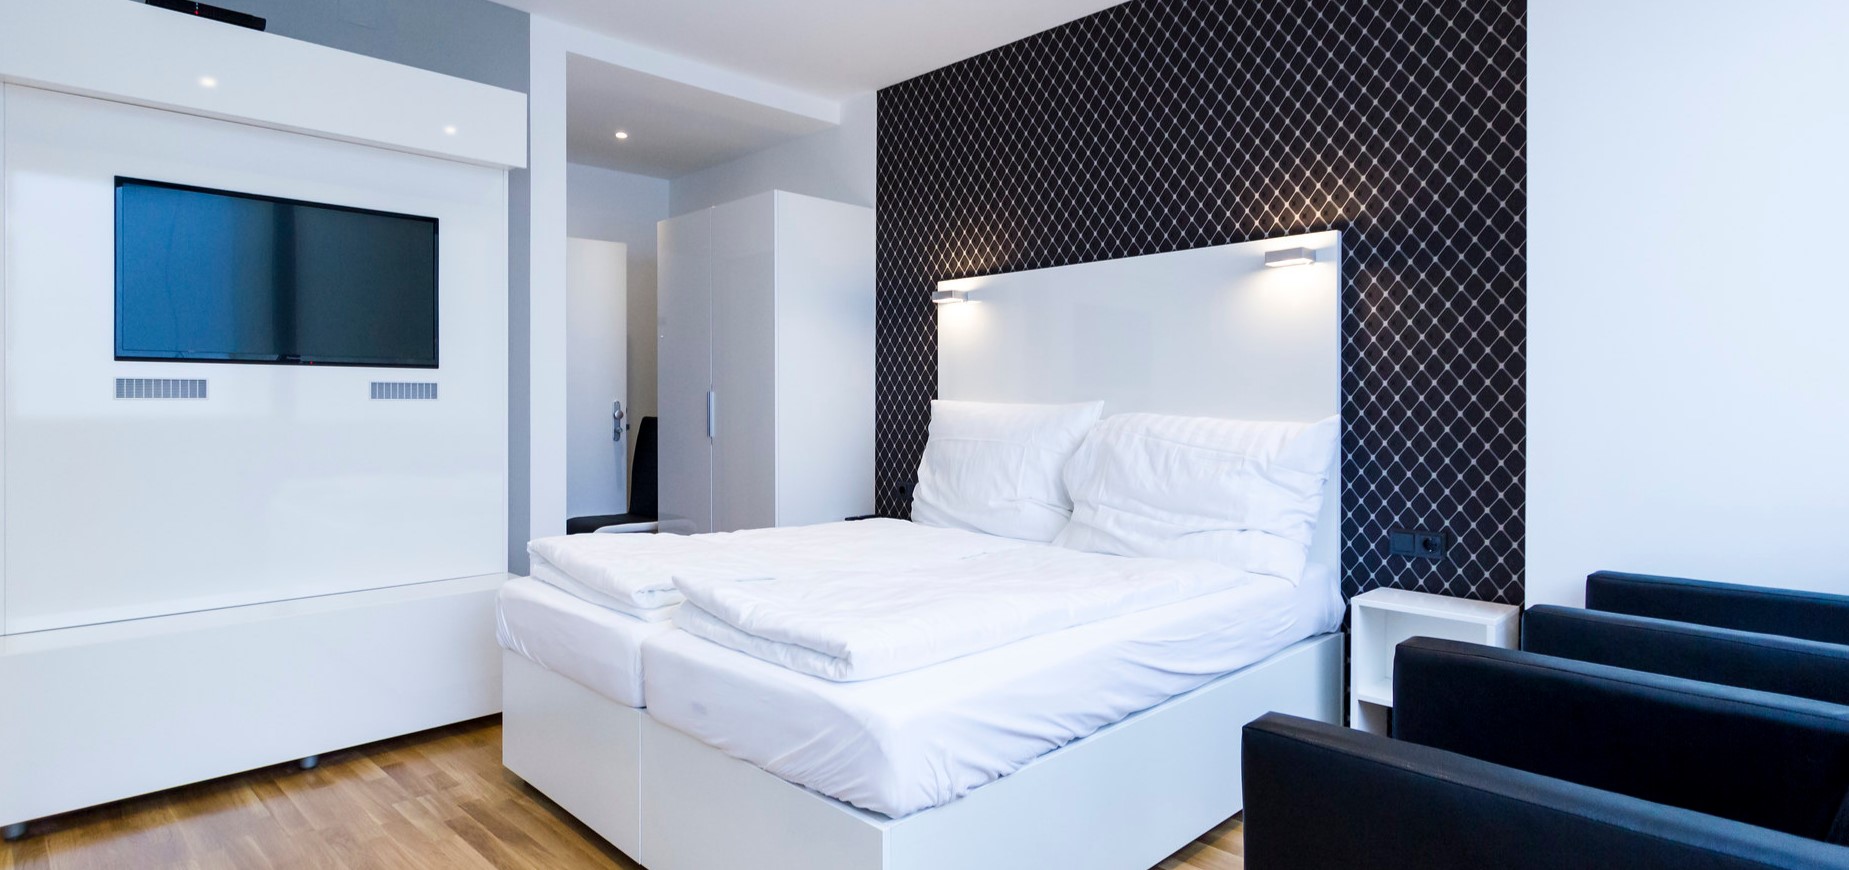 Интерьер спальни с чертами стилей хай-тек и минимализм